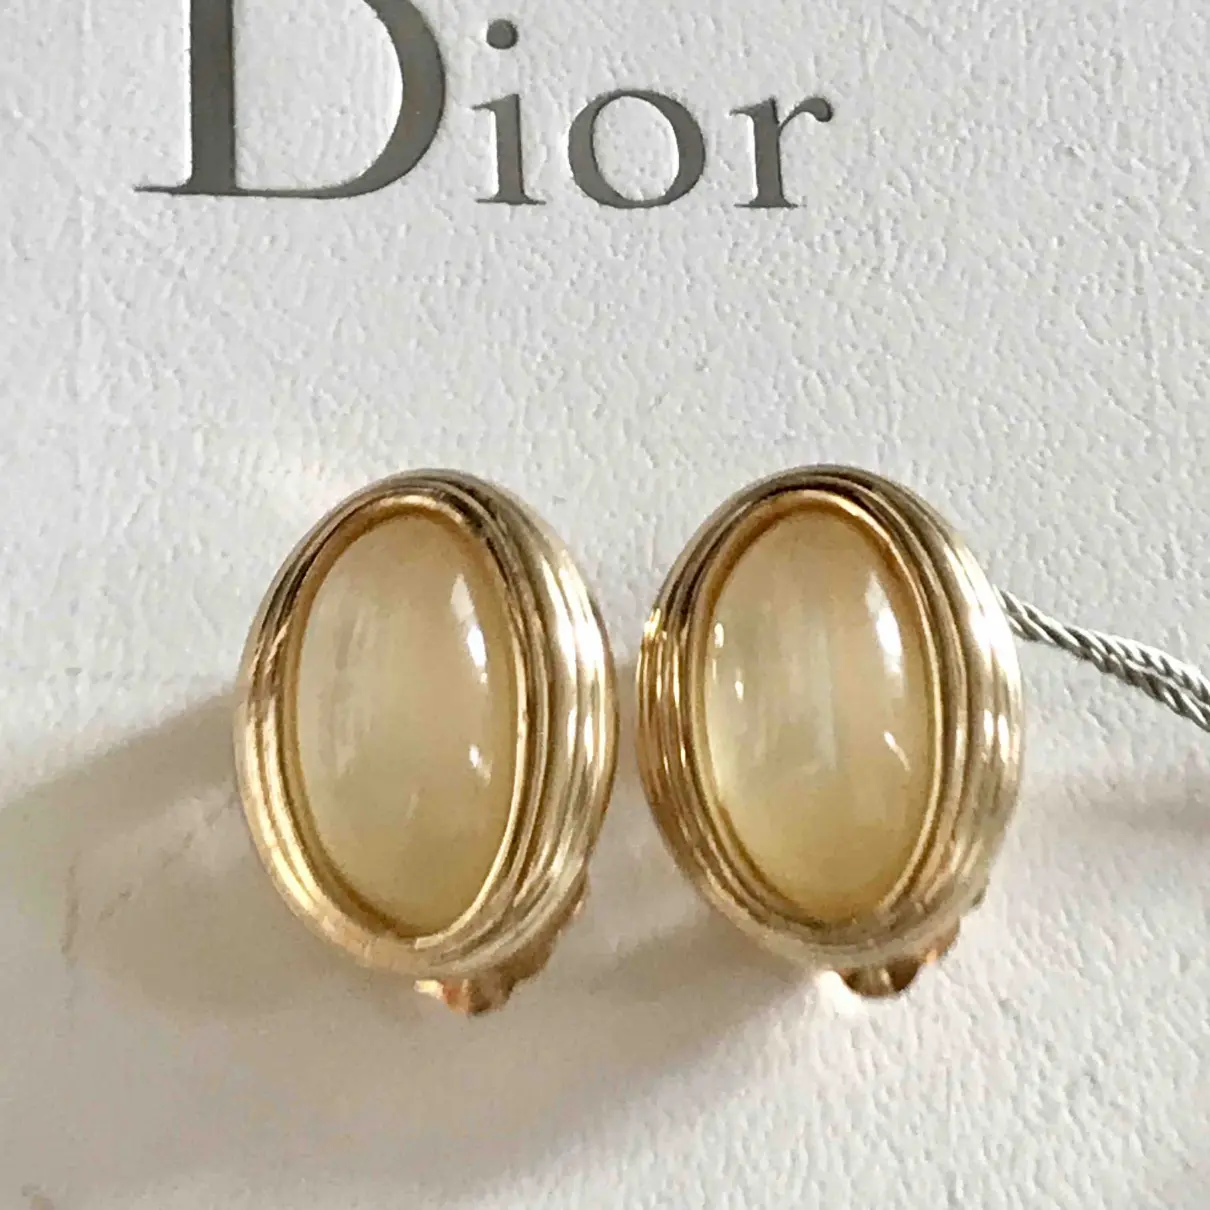 Earrings Dior